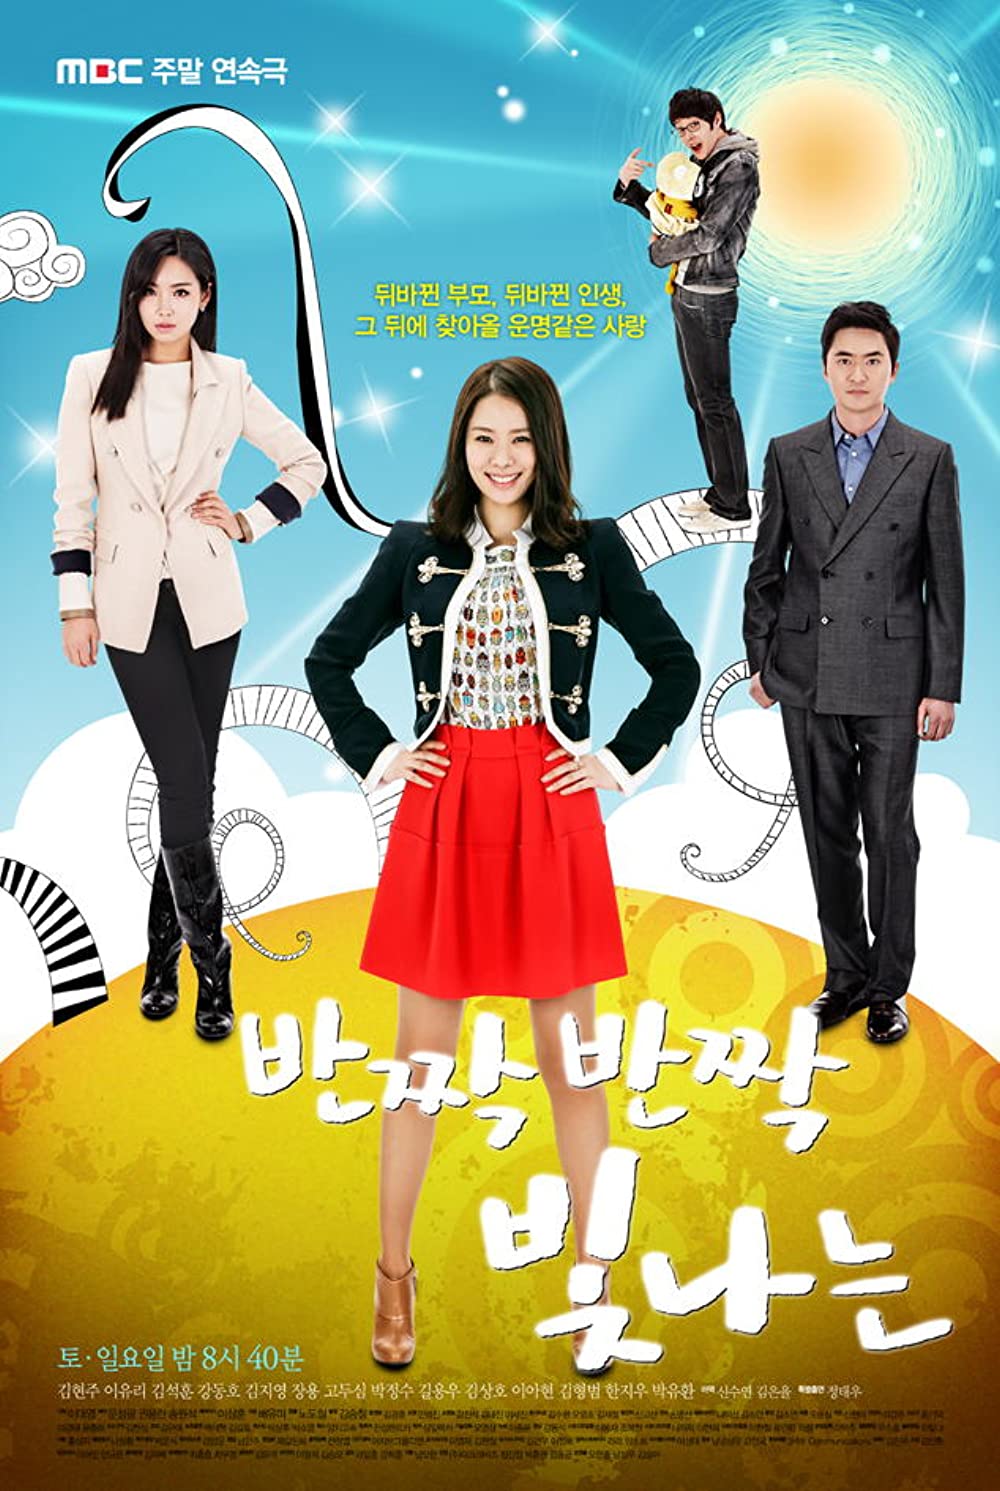 harper bazaar phim cua ac lee yoo ri 1 - 10 phim truyền hình hay nhất của “ác nữ quốc dân” Lee Yoo Ri